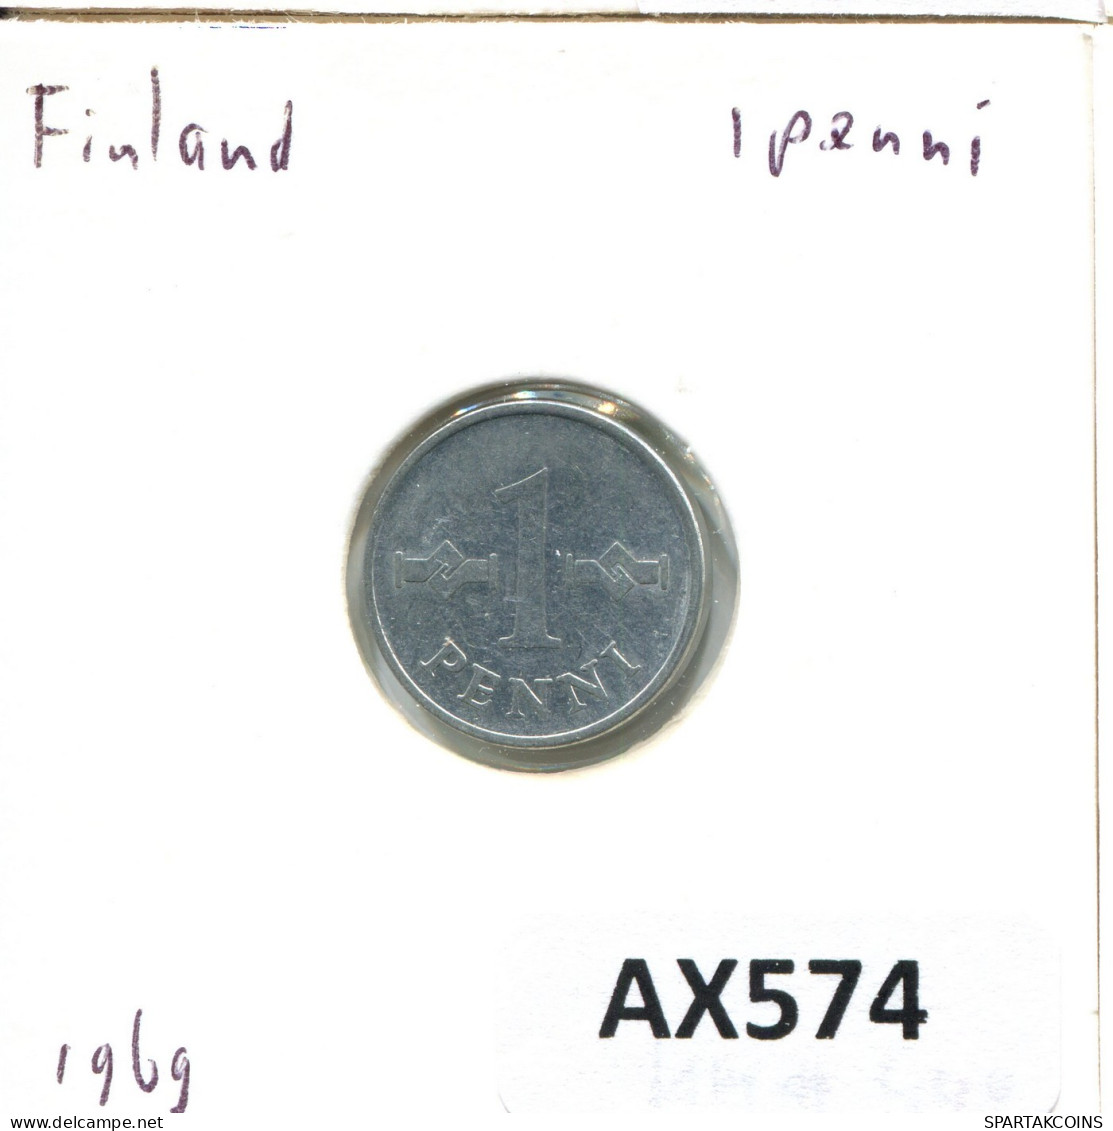 1 PENNY 1969 FINNLAND FINLAND Münze #AX574.D.A - Finlandia